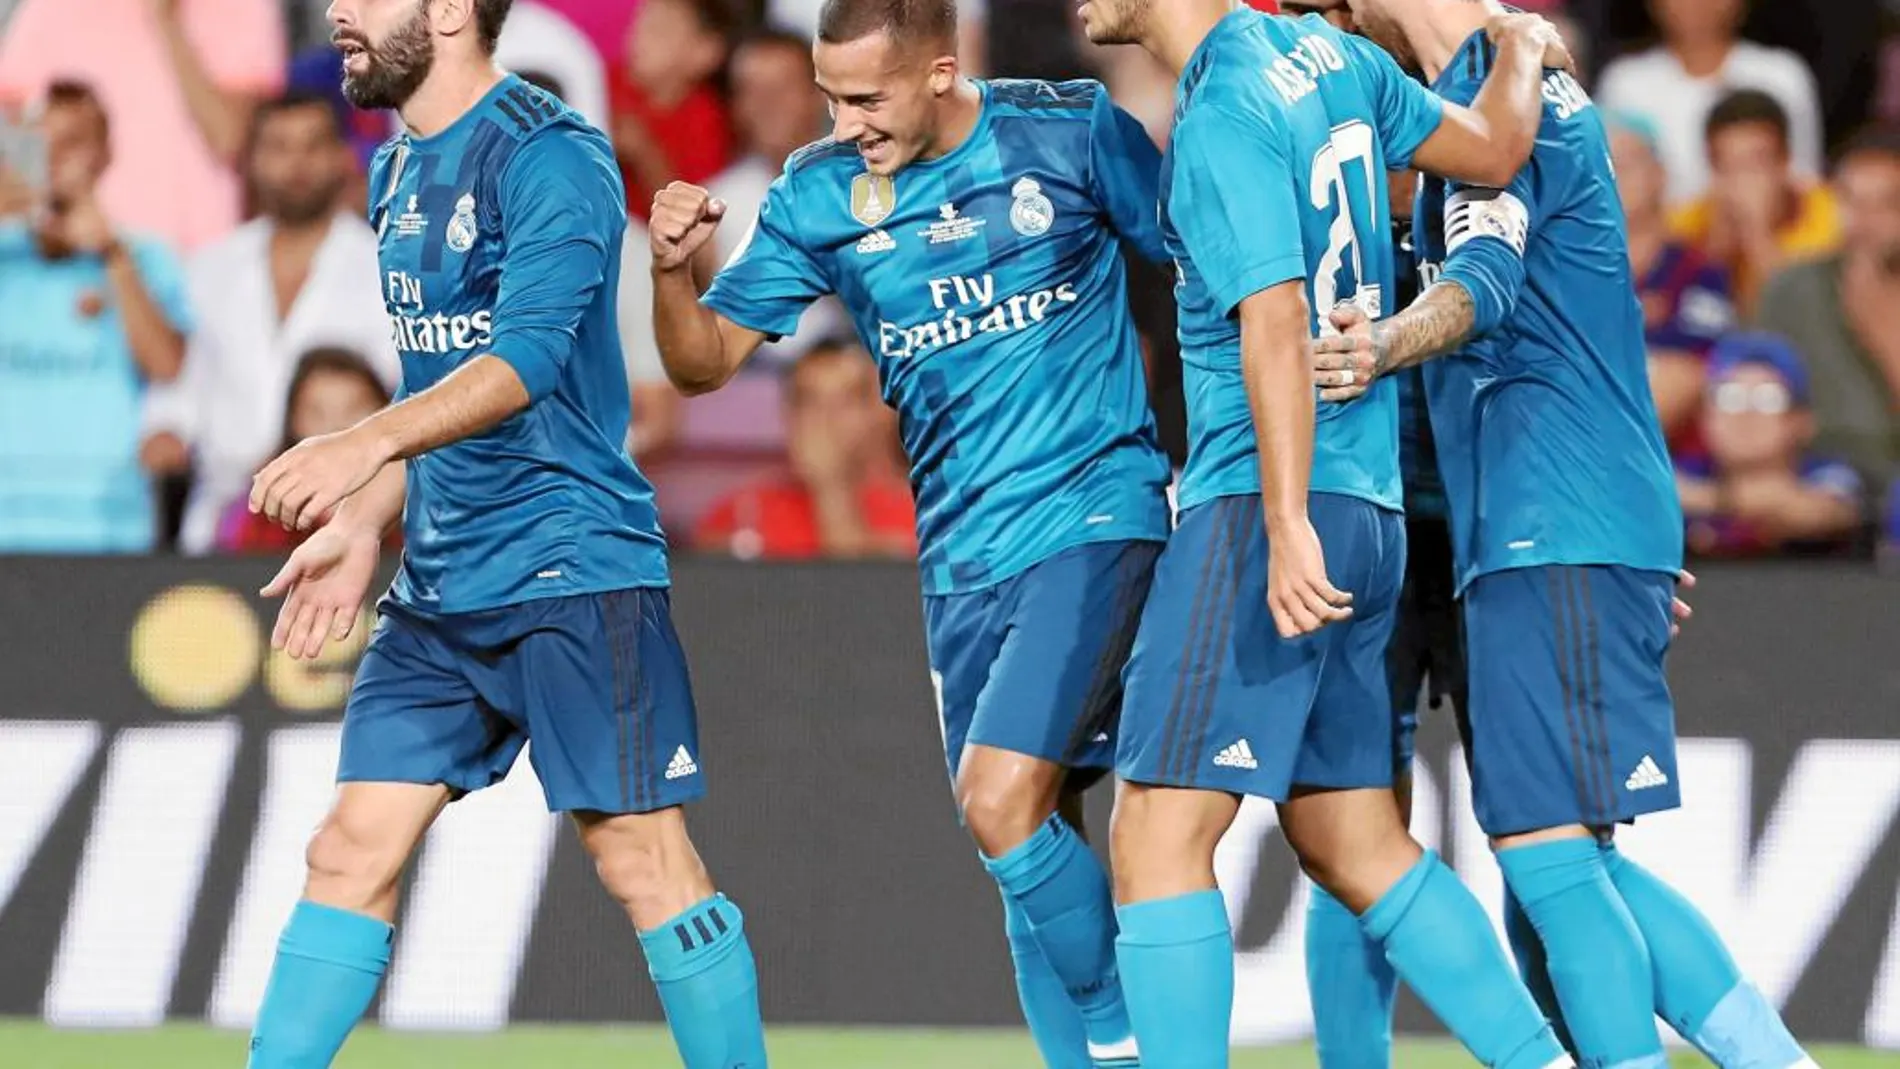 Lucas Vázquez, Sergio Ramos y Casemiro felicitan a Asensio tras su gol en el Camp Nou